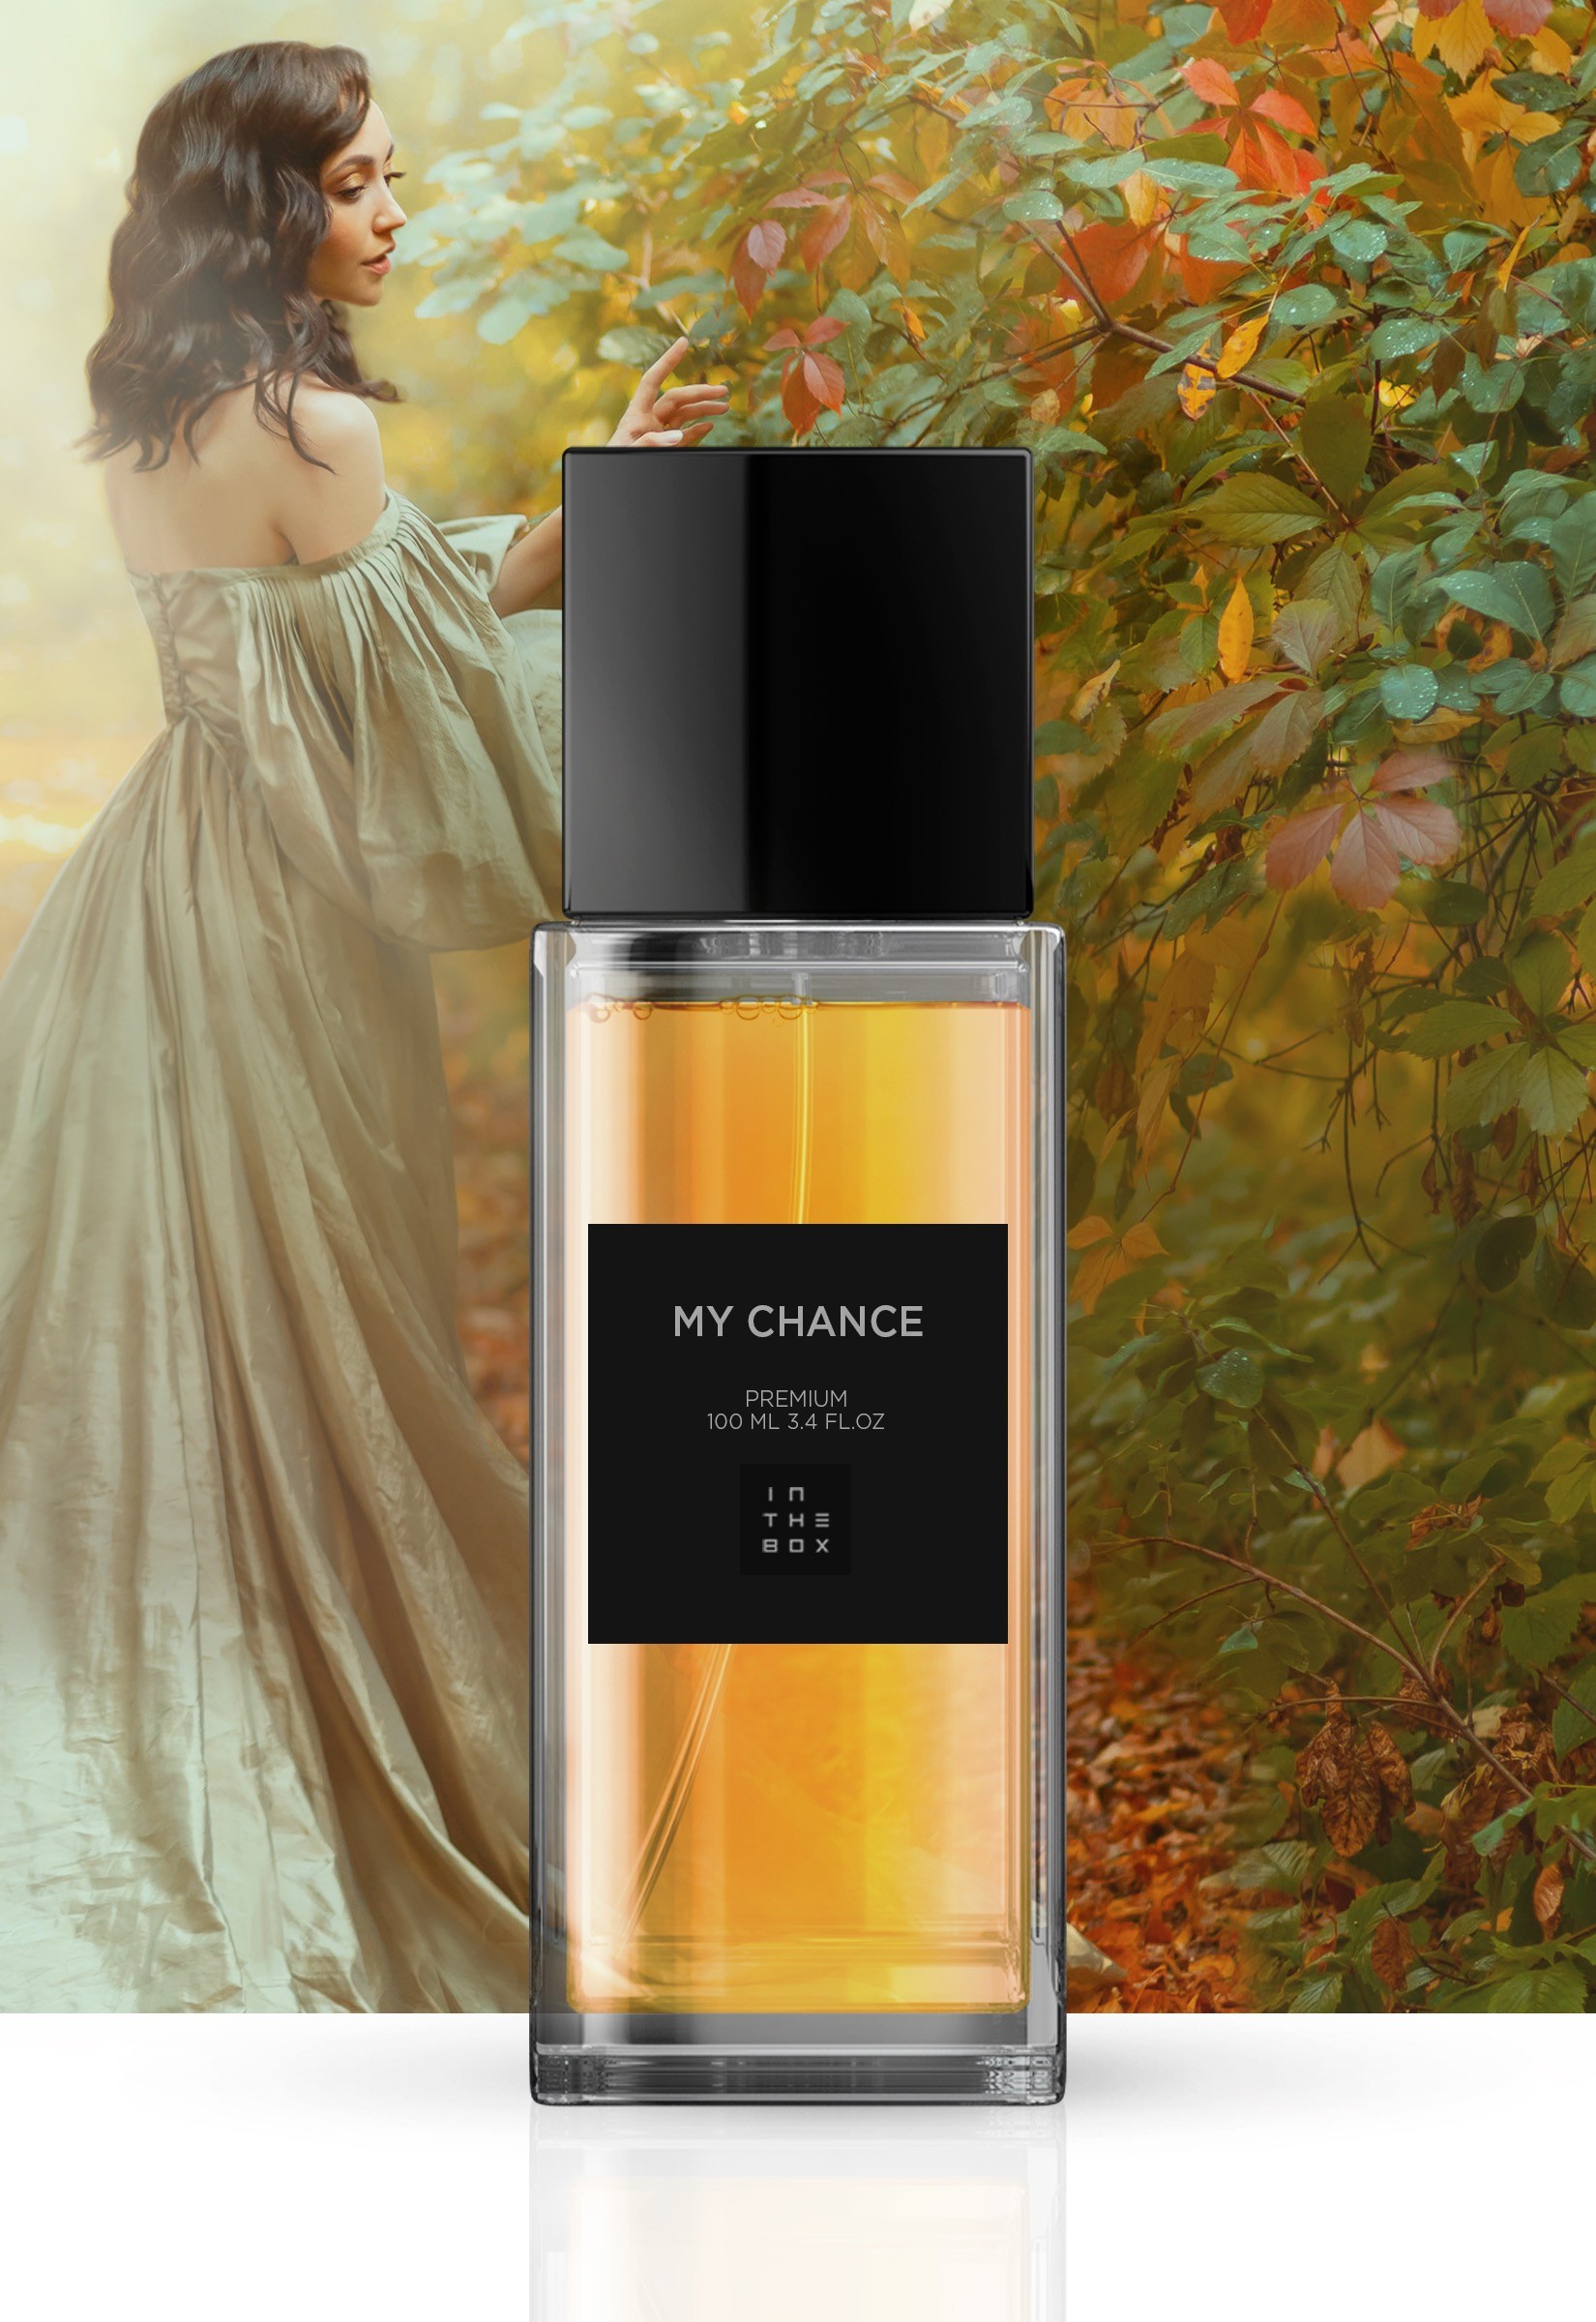 Chance Eau Fraiche Eau de Parfum Chanel perfume - a novo